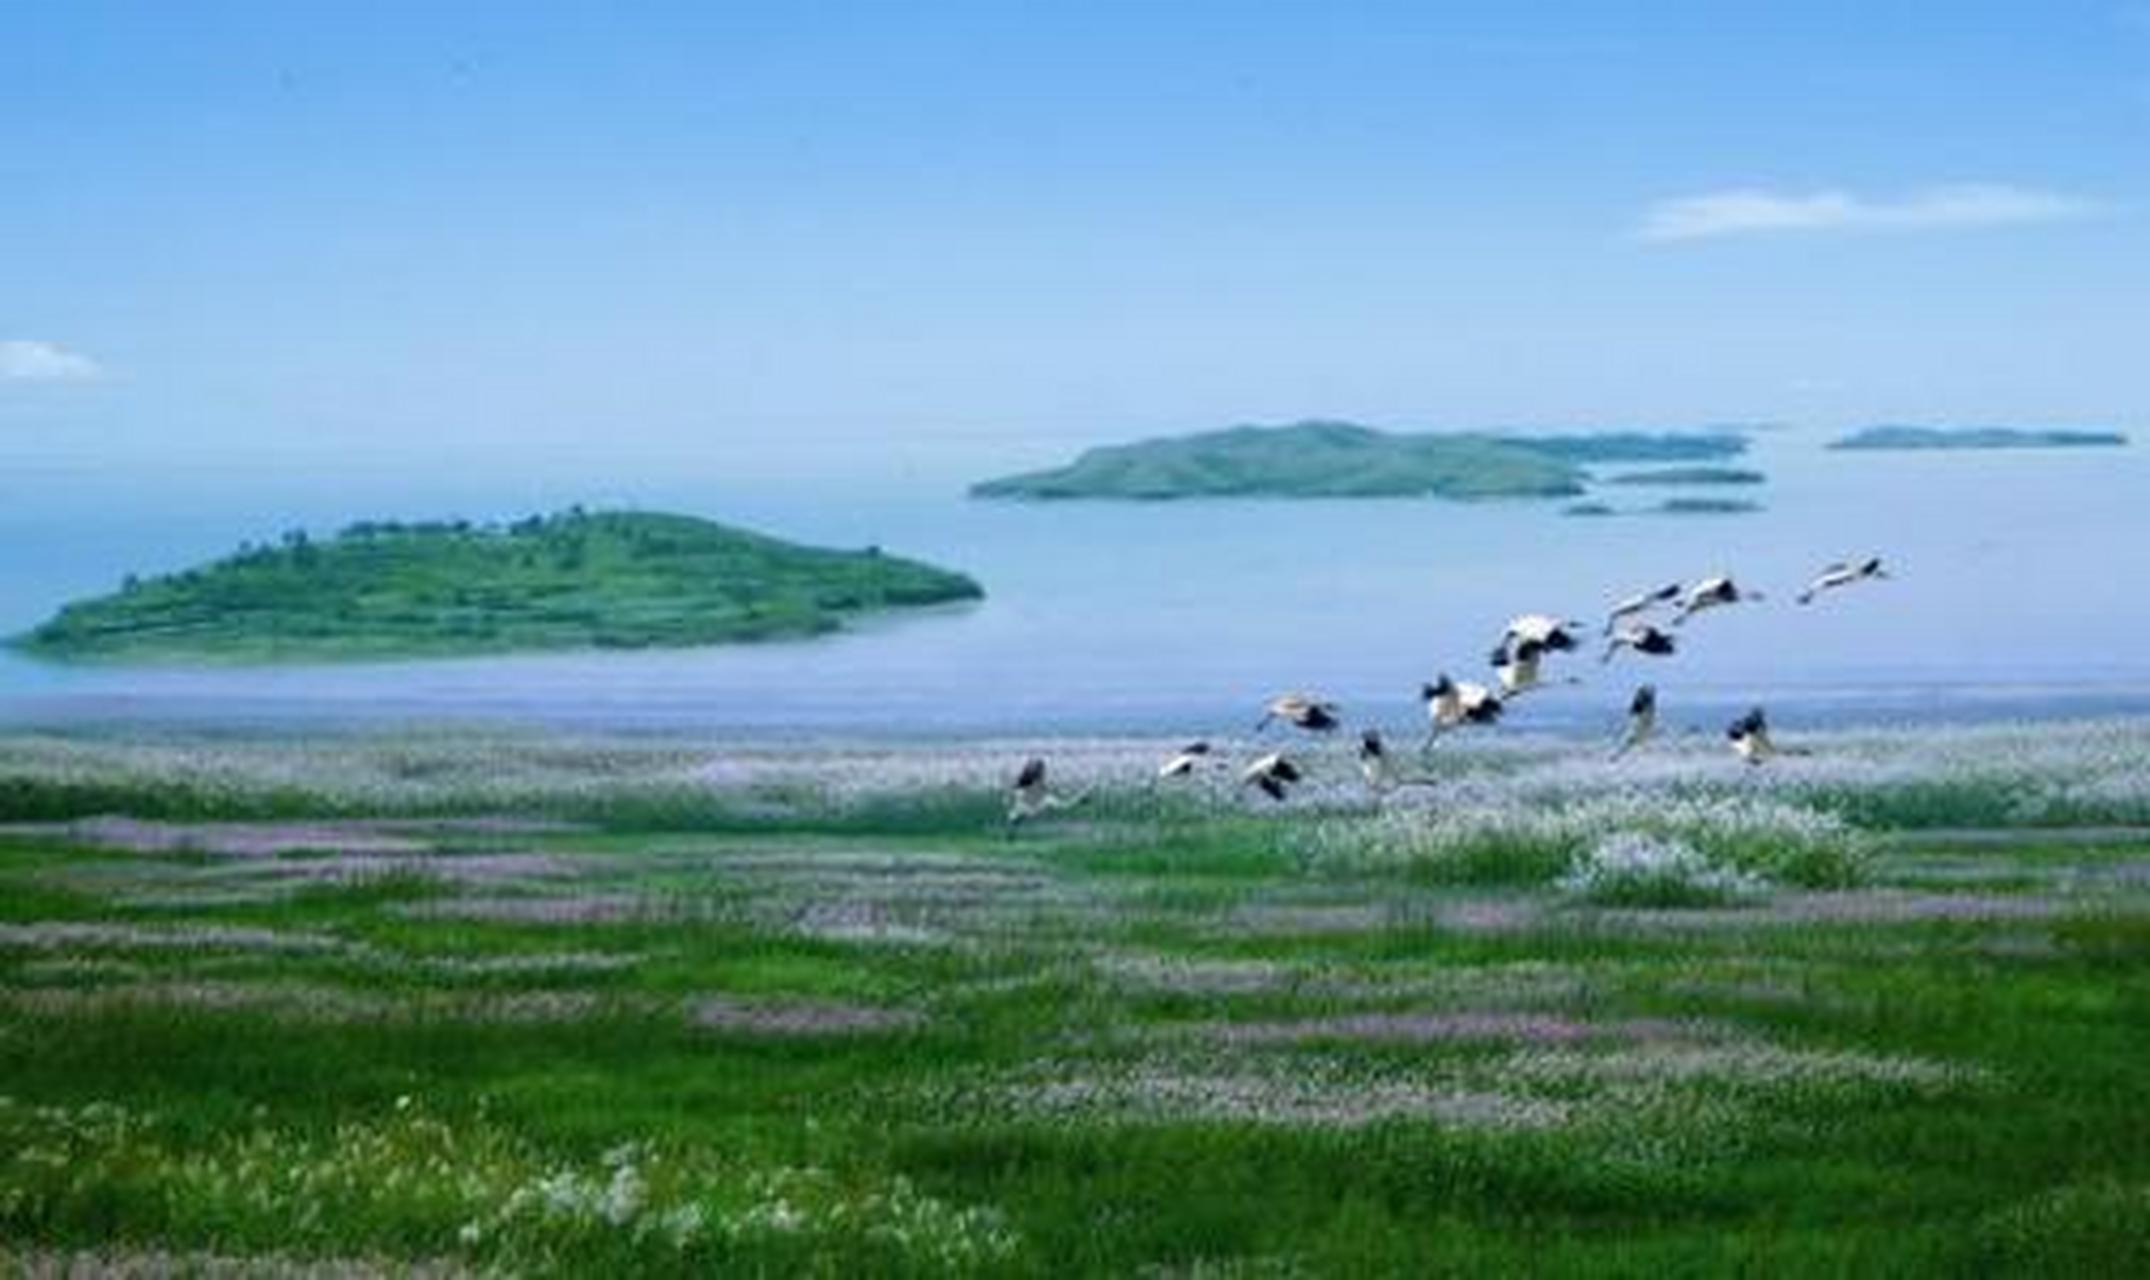 鄱阳湖旅游景区,主要指湖区内的景点及自然保护区整体